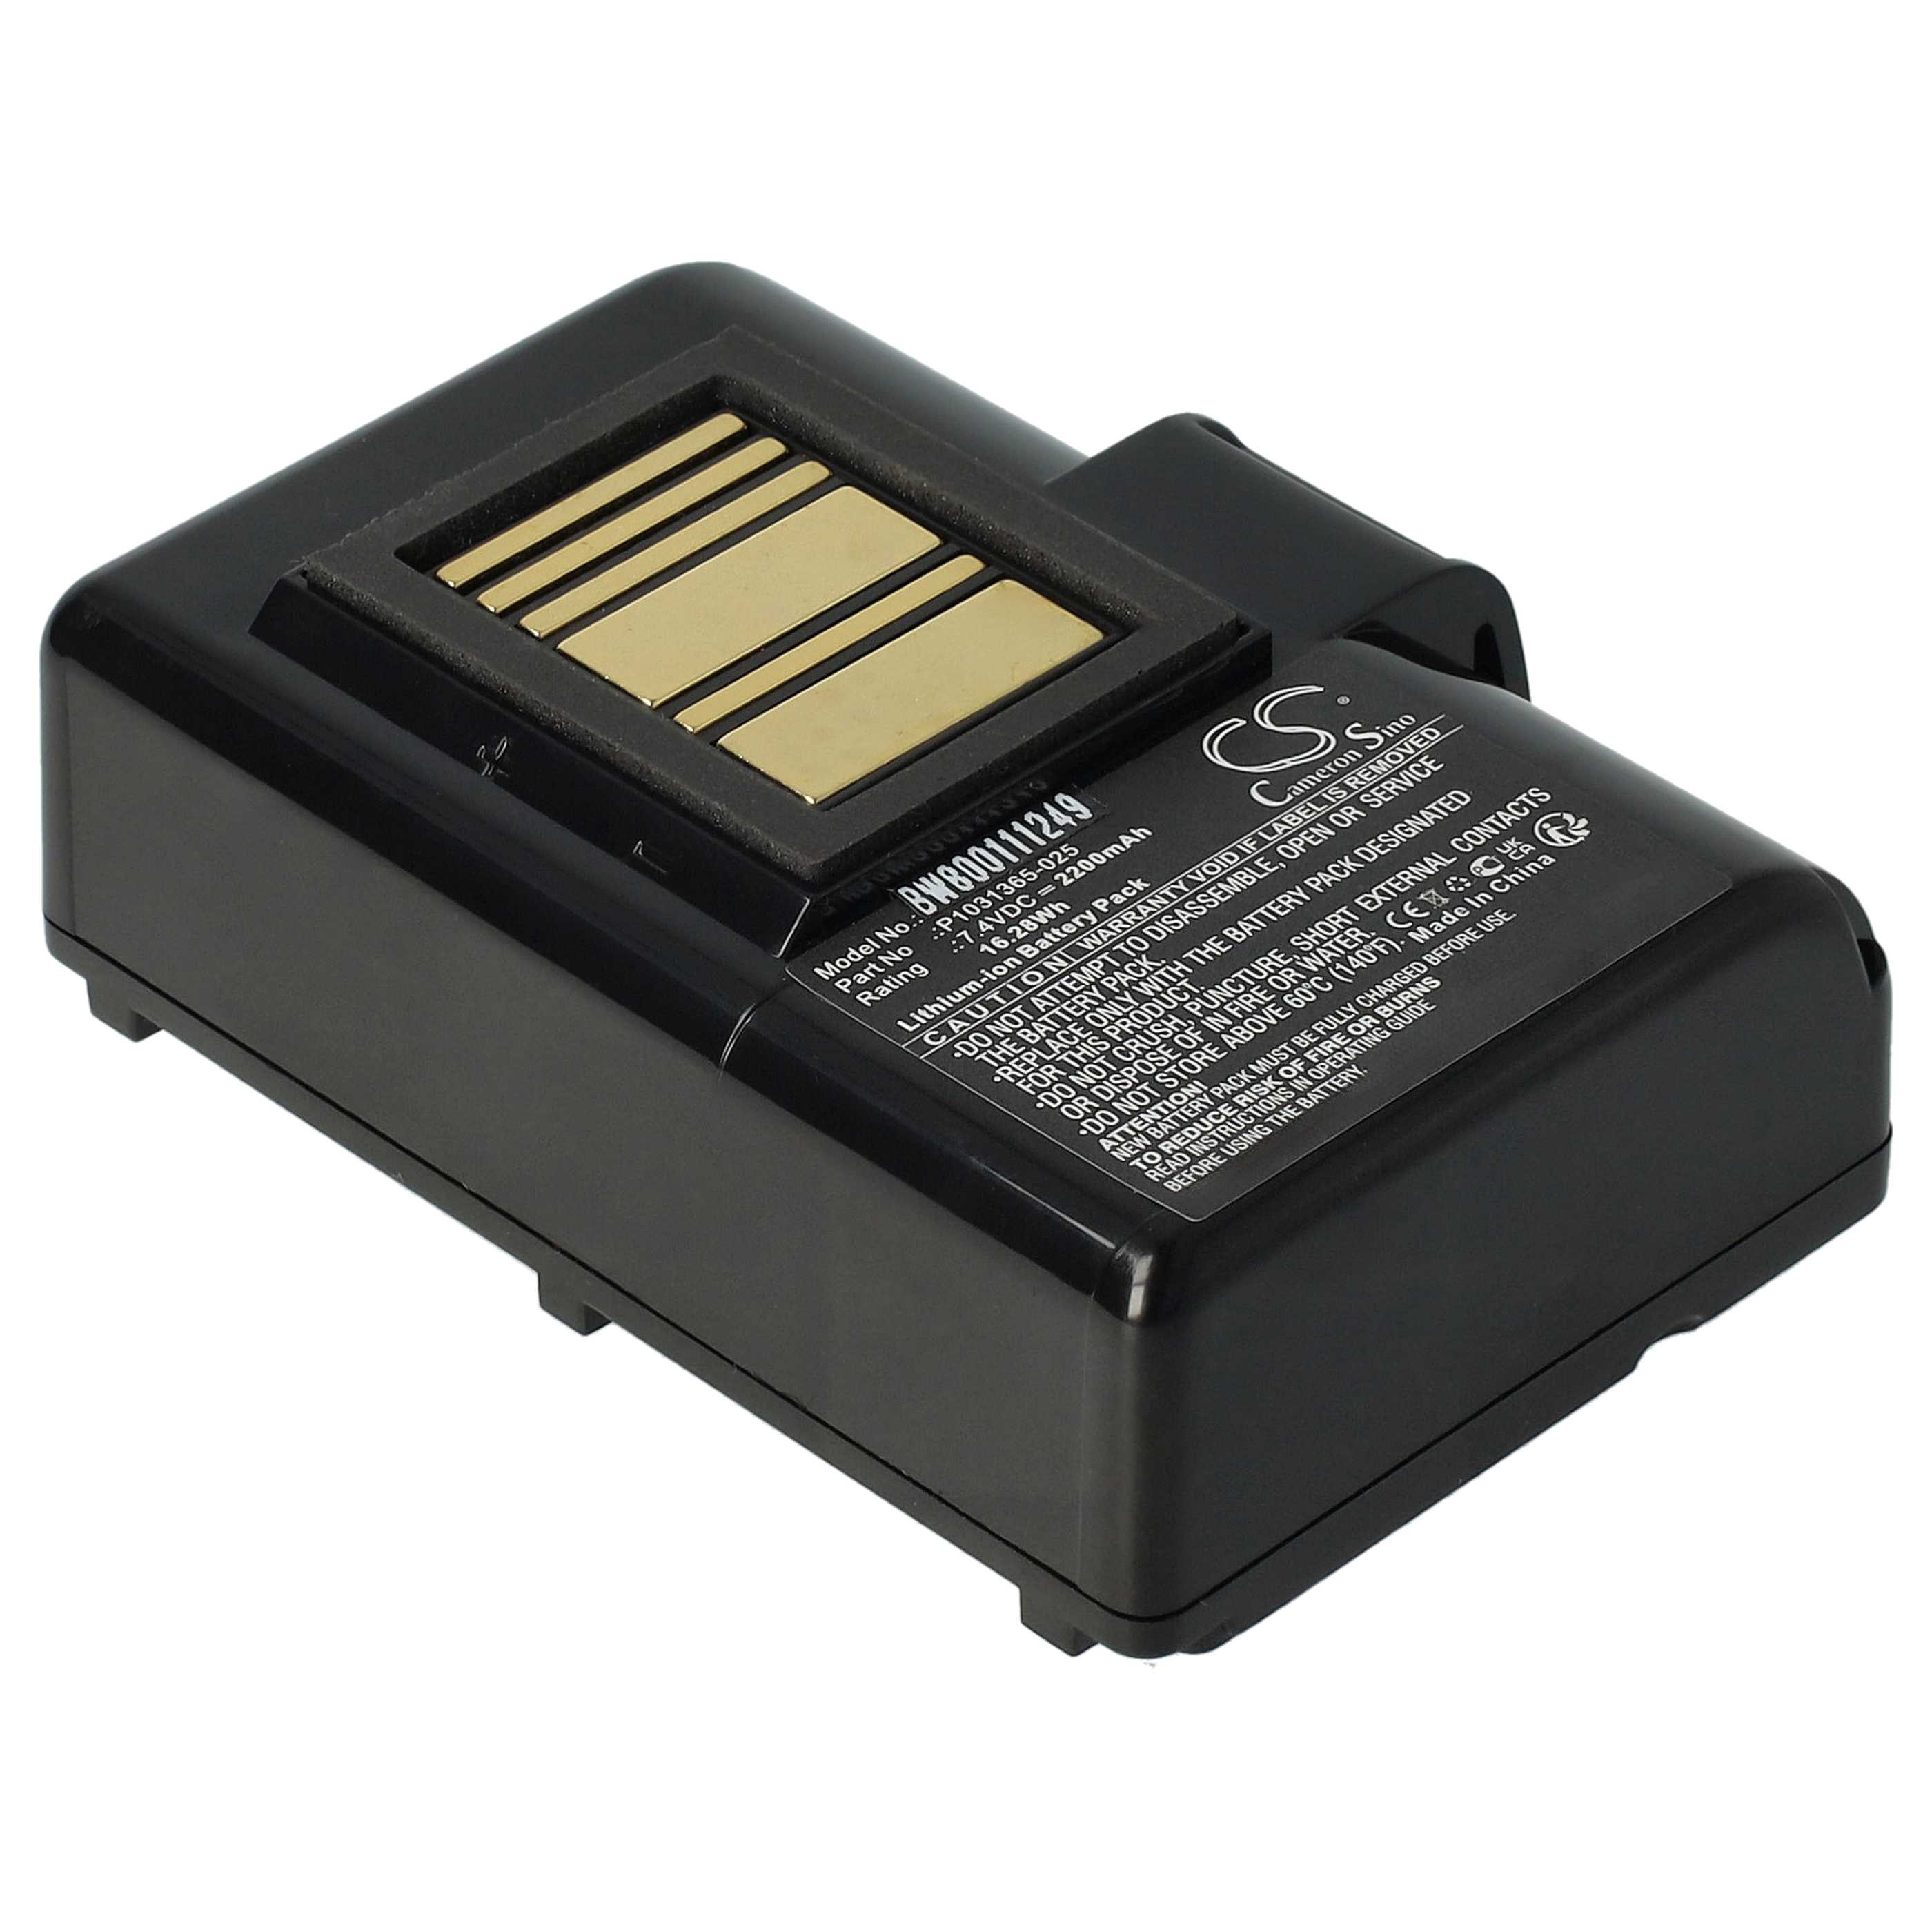 Akumulator do drukarki / drukarki etykiet zamiennik Zebra AT16004, BTRY-MPP-34MA1-01 - 2200 mAh 7,4 V Li-Ion